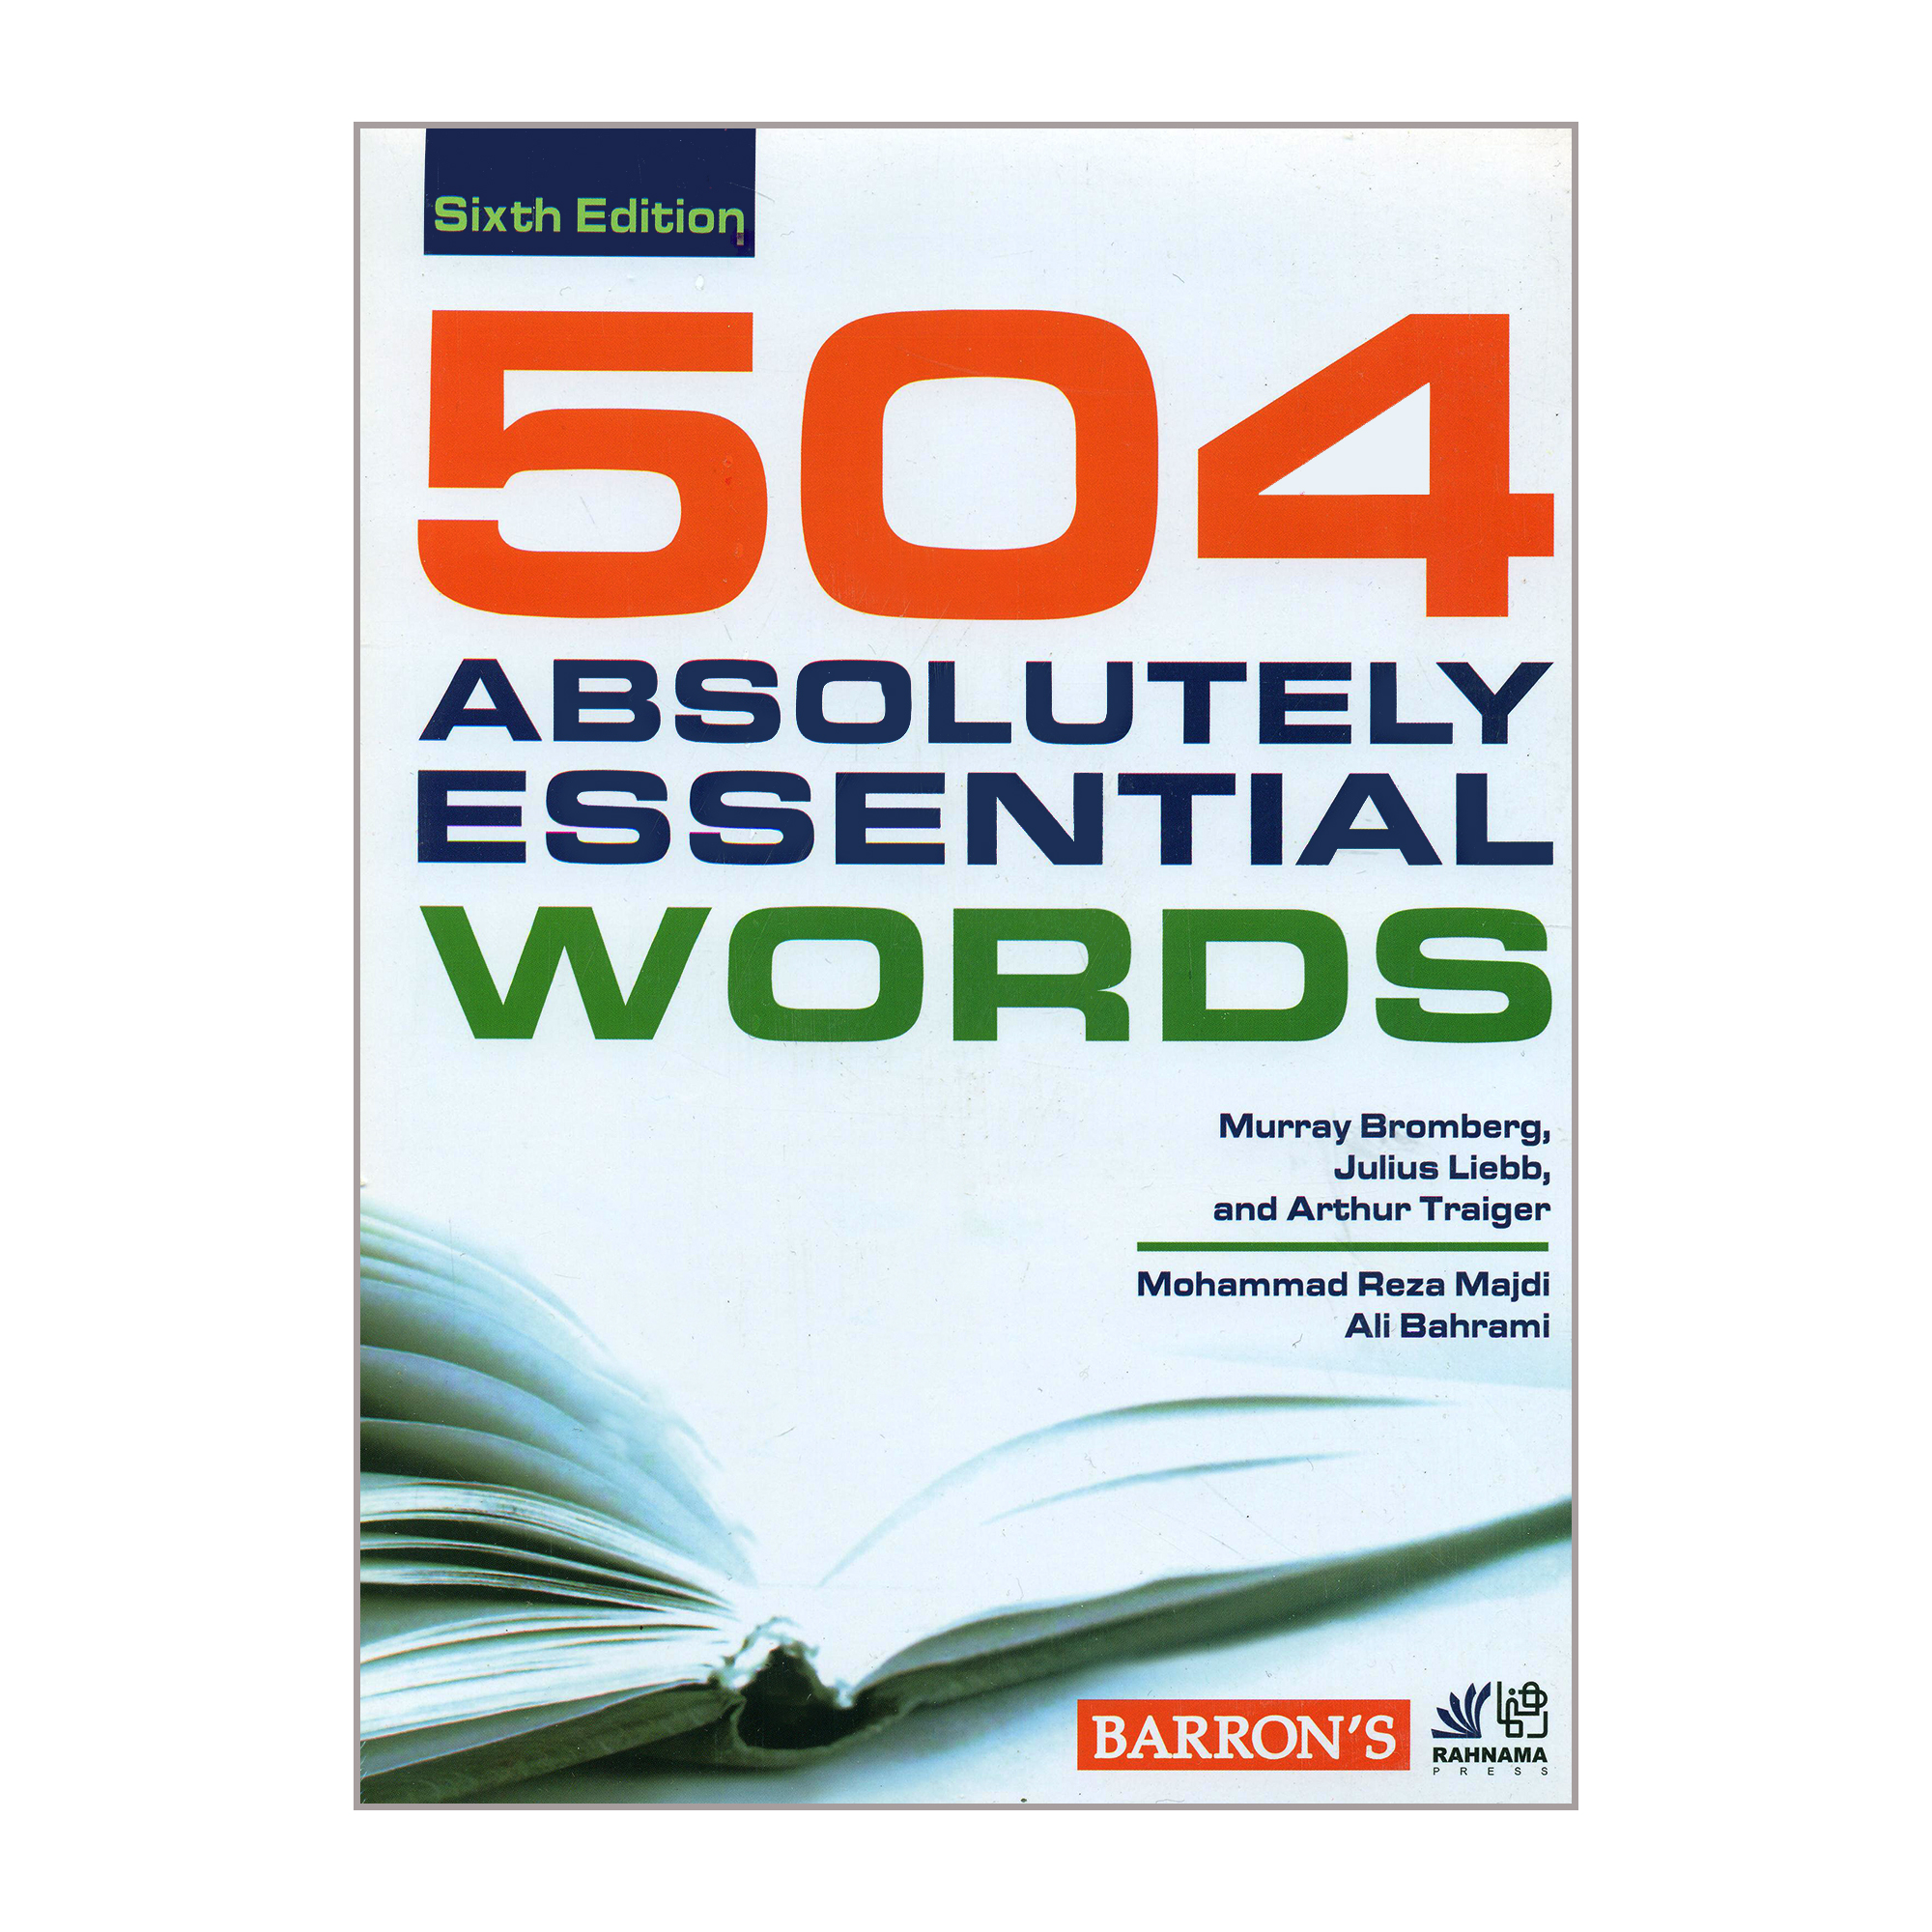 نقد و بررسی کتاب 504 ABSOLUTELY ESSENTIAL WORDS اثر جمعی از نویسندگان انتشارات رهنما توسط خریداران